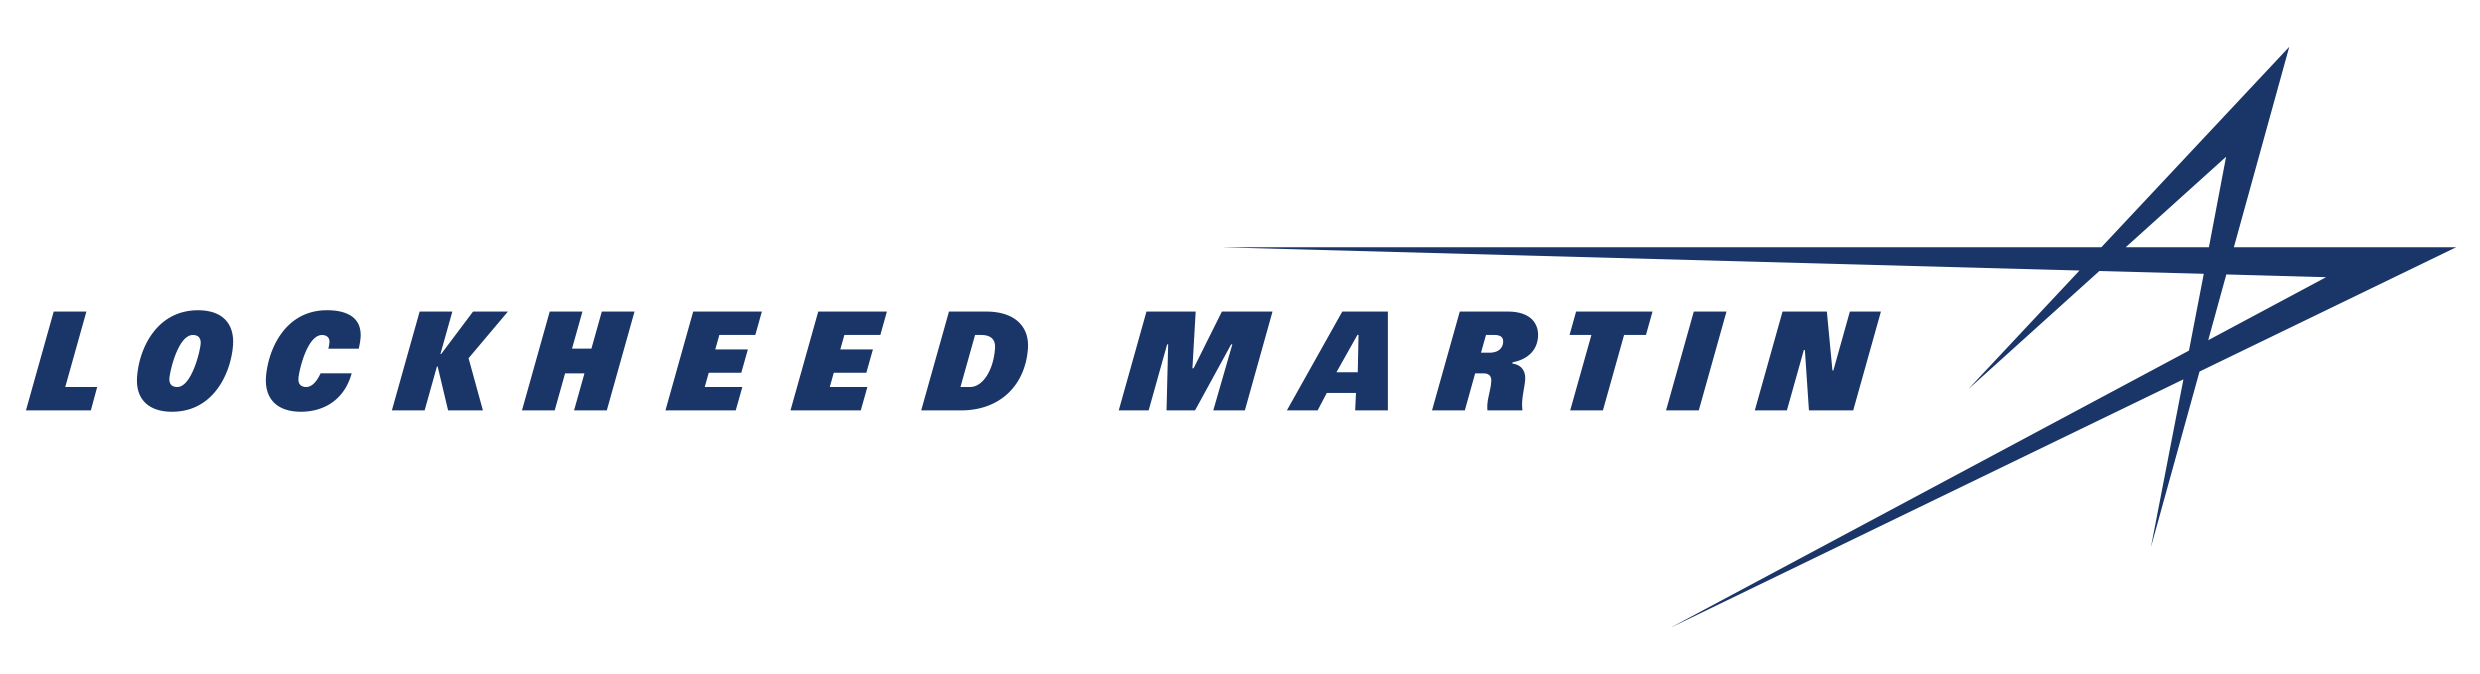 Lockheed Aircraft Logo - Lockheed Martin Corporation | Lockheed Martin